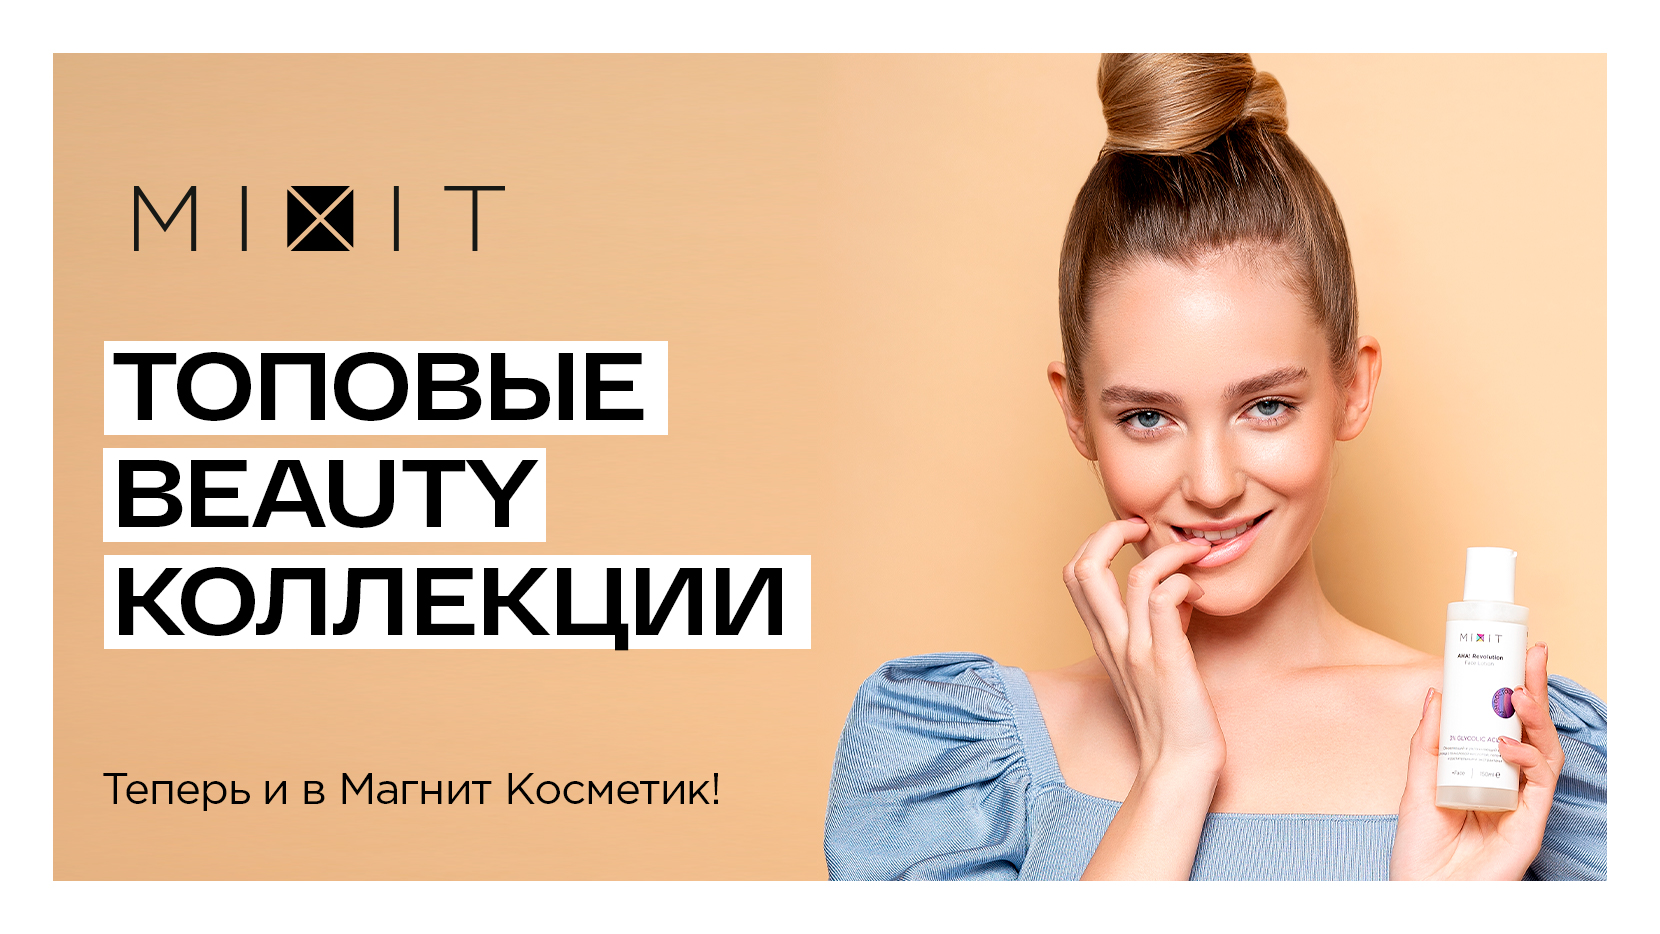 Российский косметический бренд Mixit официально объявляет о новом направлении своего развития – выходе на рынок FMCG и начале сотрудничества с сетью магазинов «Магнит Косметик», фото